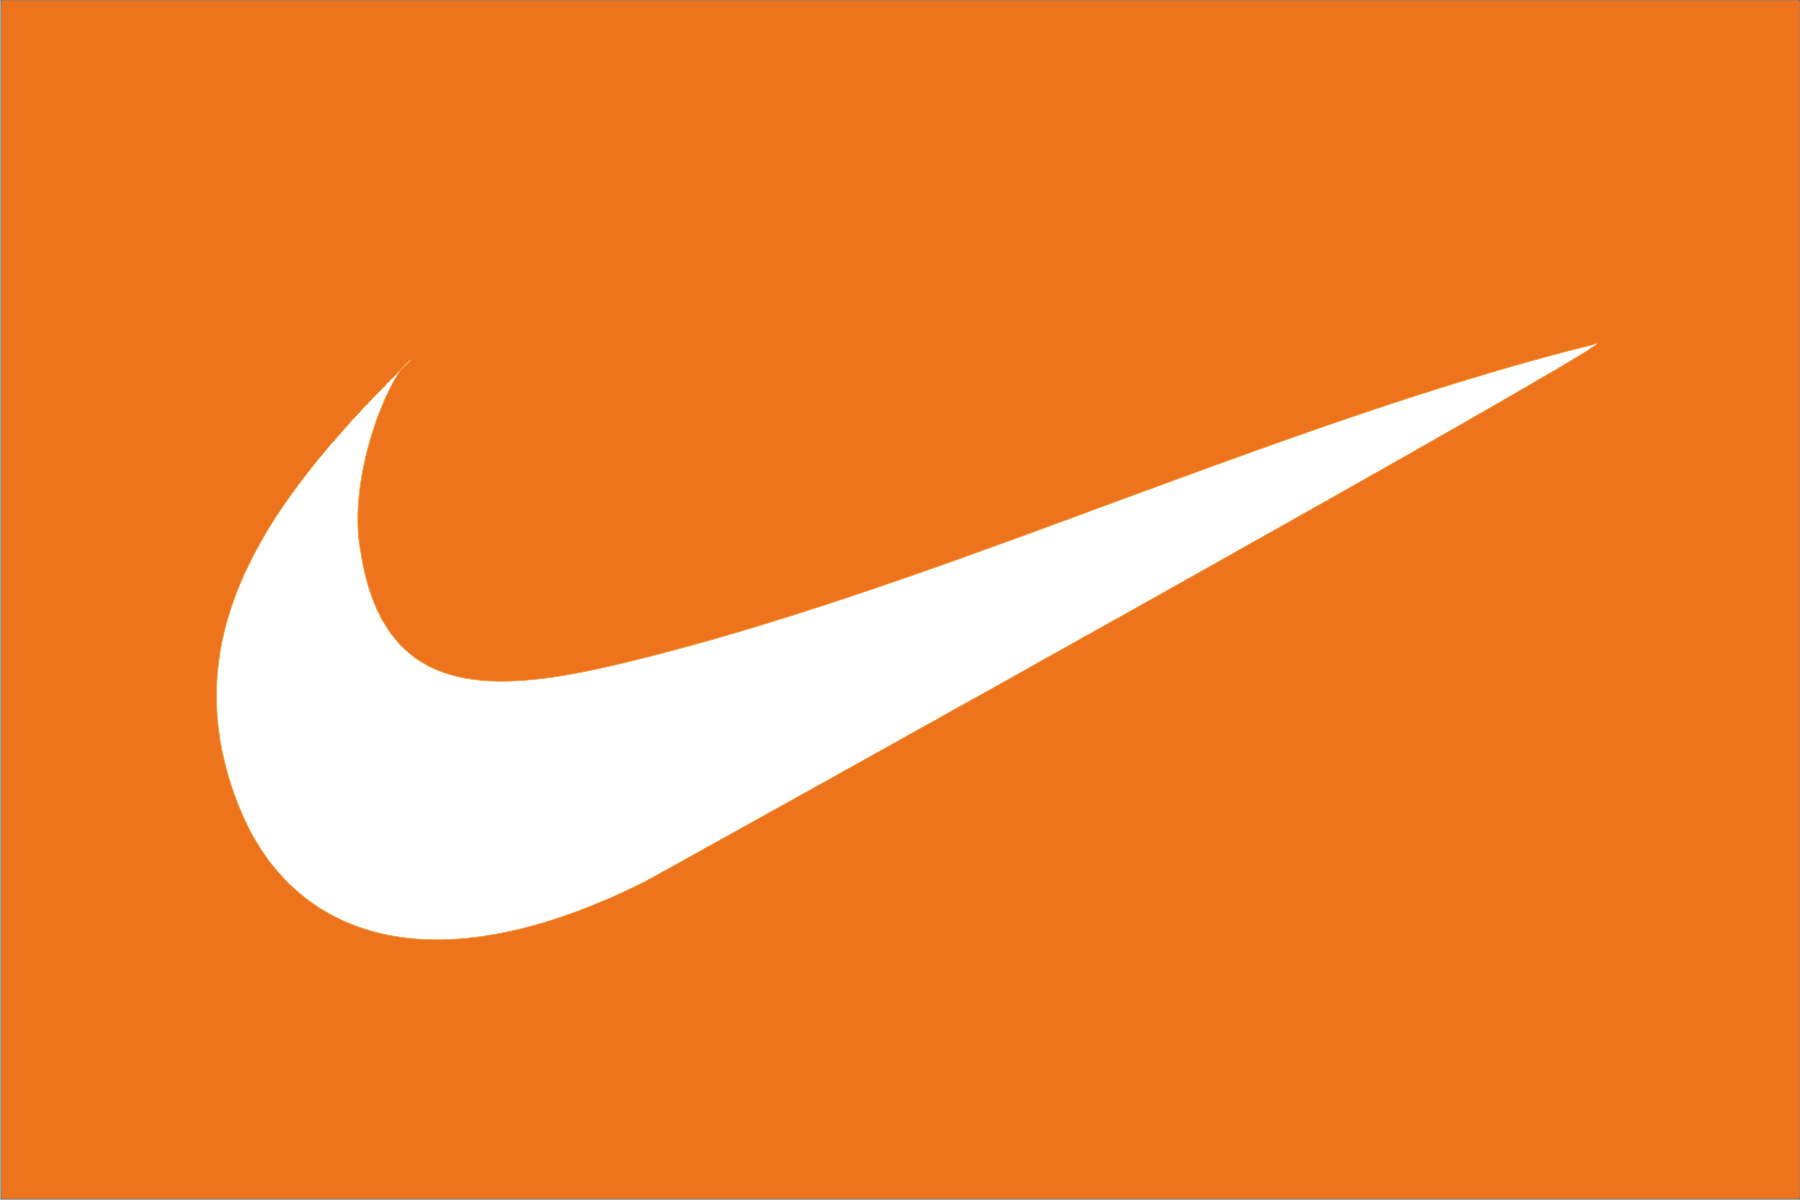 Việc tải xuống logo Nike là một điều quan trọng để bạn có thể sử dụng logo này trong những dự án của mình. Logo Nike được biết đến như là một trong những biểu tượng nổi tiếng nhất trong lĩnh vực thể thao. Việc sử dụng logo này sẽ giúp bạn tạo nên một phong cách chuyên nghiệp và nâng cao giá trị thương hiệu của bạn.